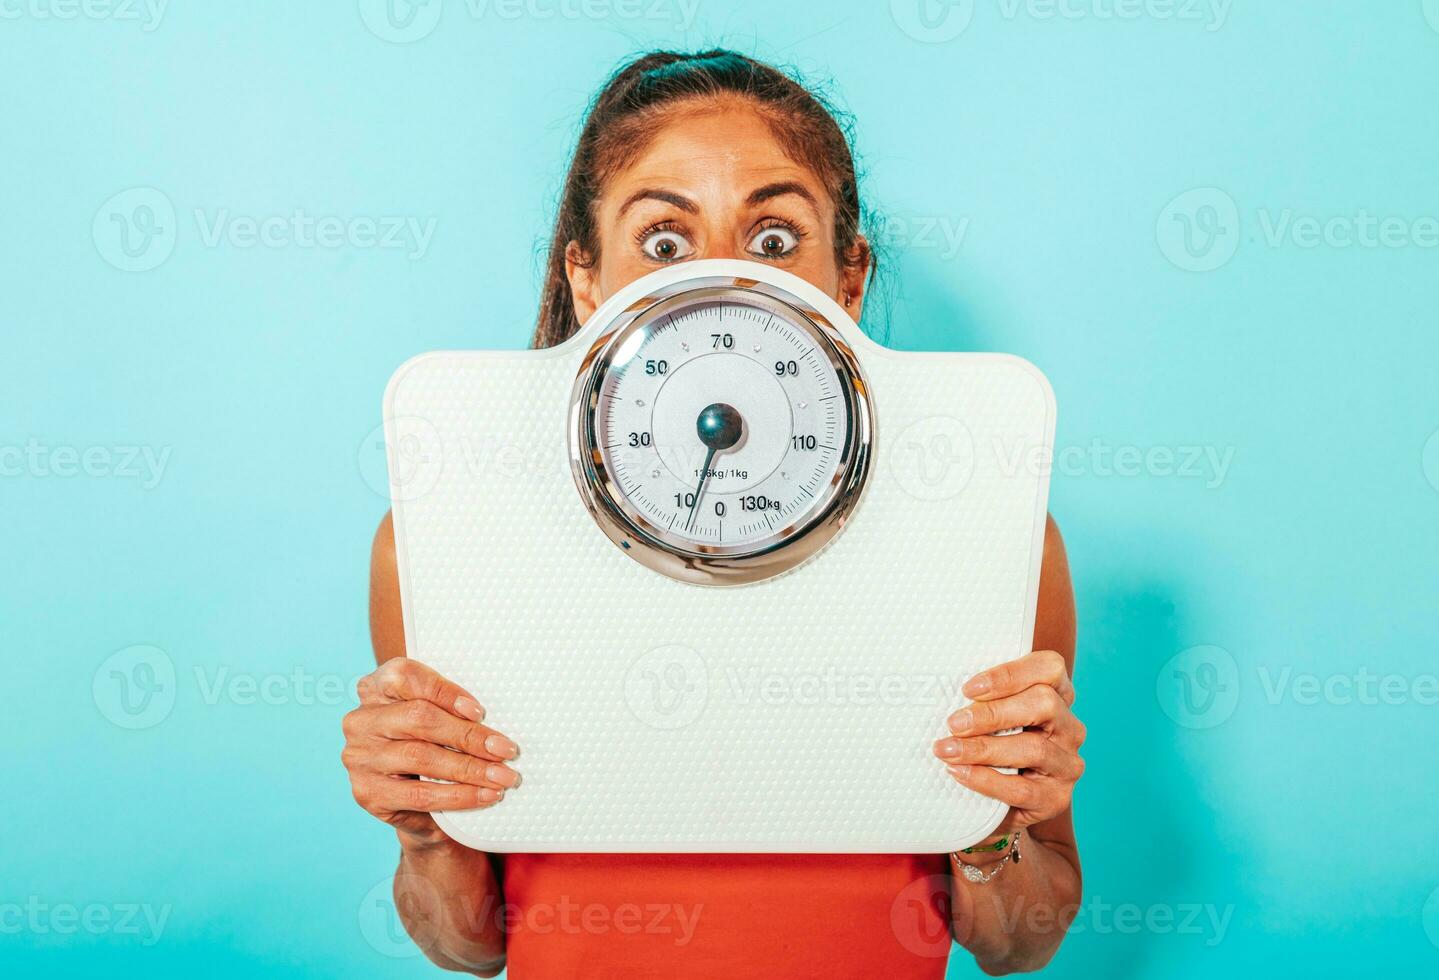 vrouw is bang van gewicht meting met schaal foto